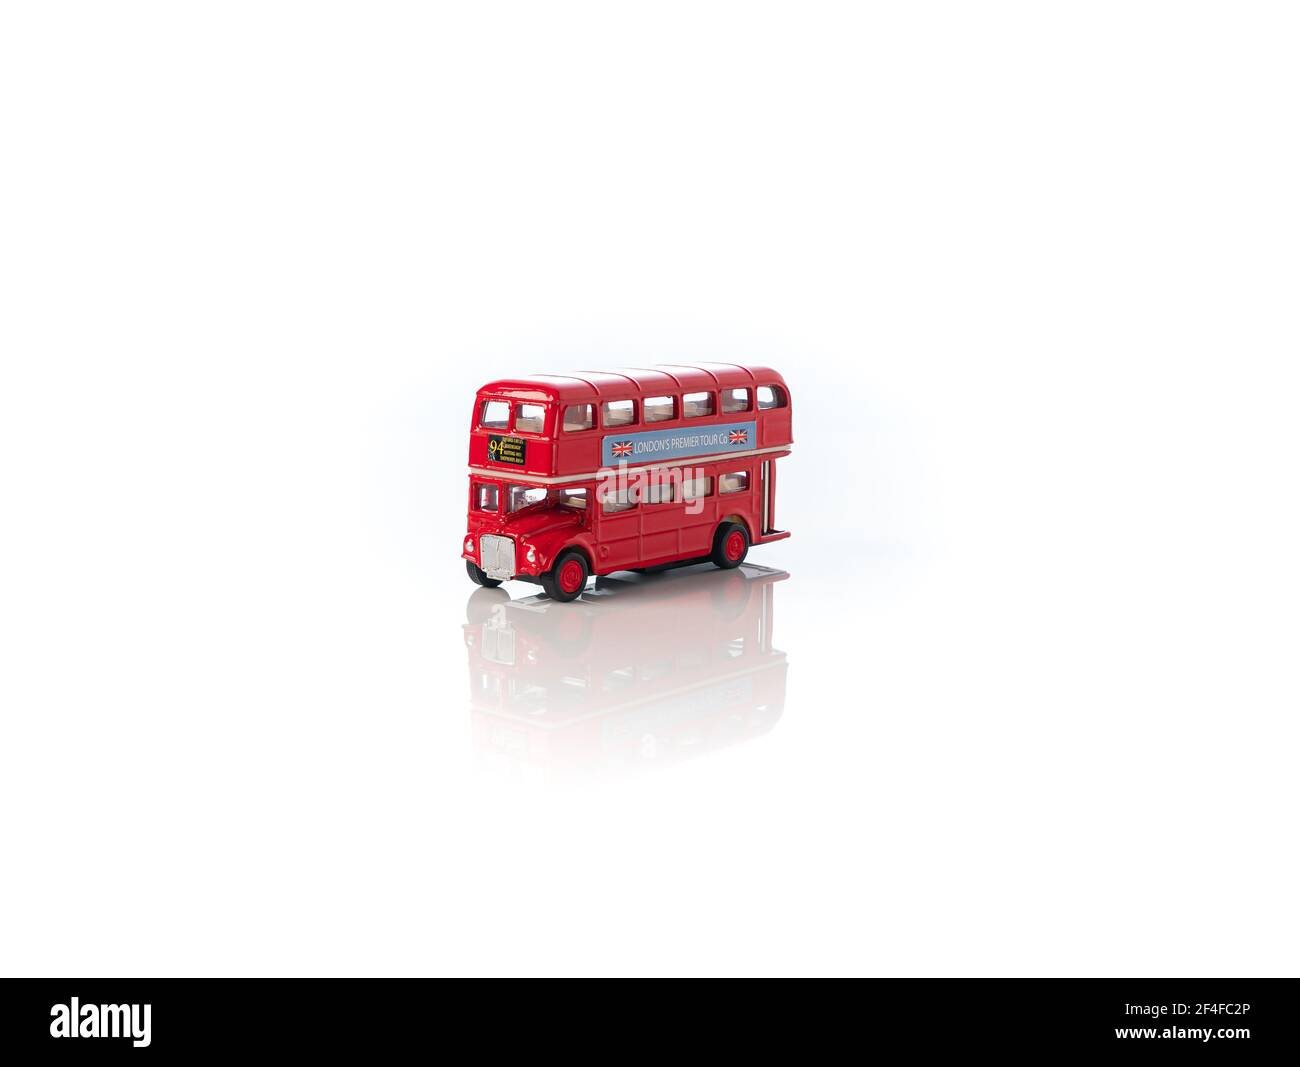 Londres, Angleterre Mars 2021. Vieux bus touristique rouge de Londres - jouet sur fond blanc, image miroir, symbole de Londres, Royaume-Uni Banque D'Images